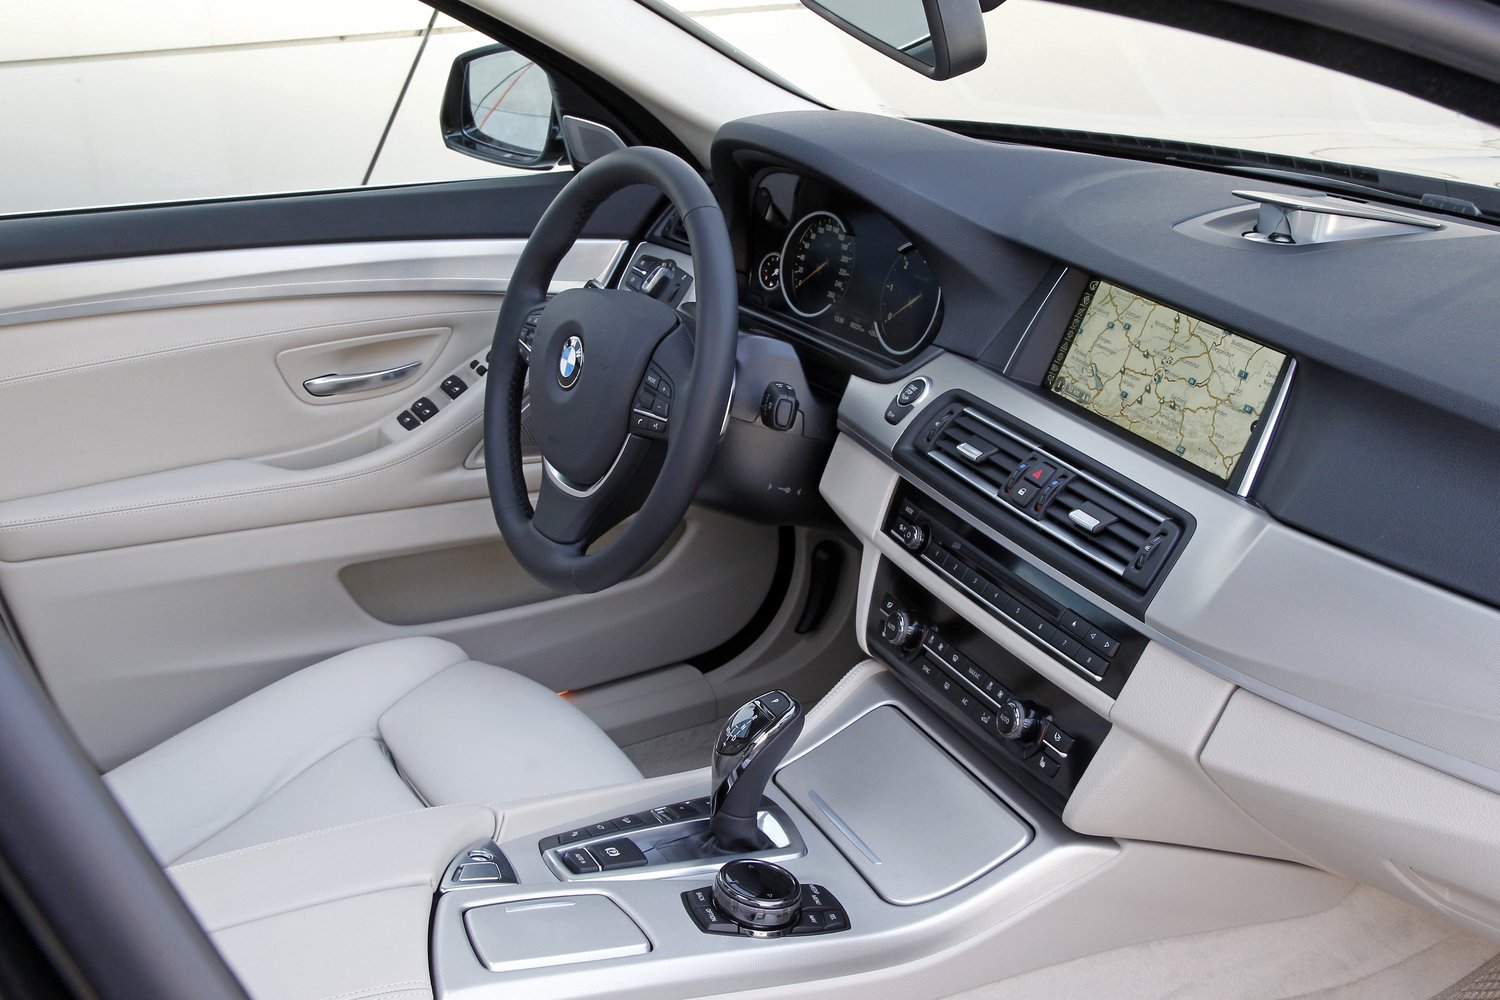 универсал BMW 5er 2013 - 2016г выпуска модификация 2.0 AT (143 л.с.)